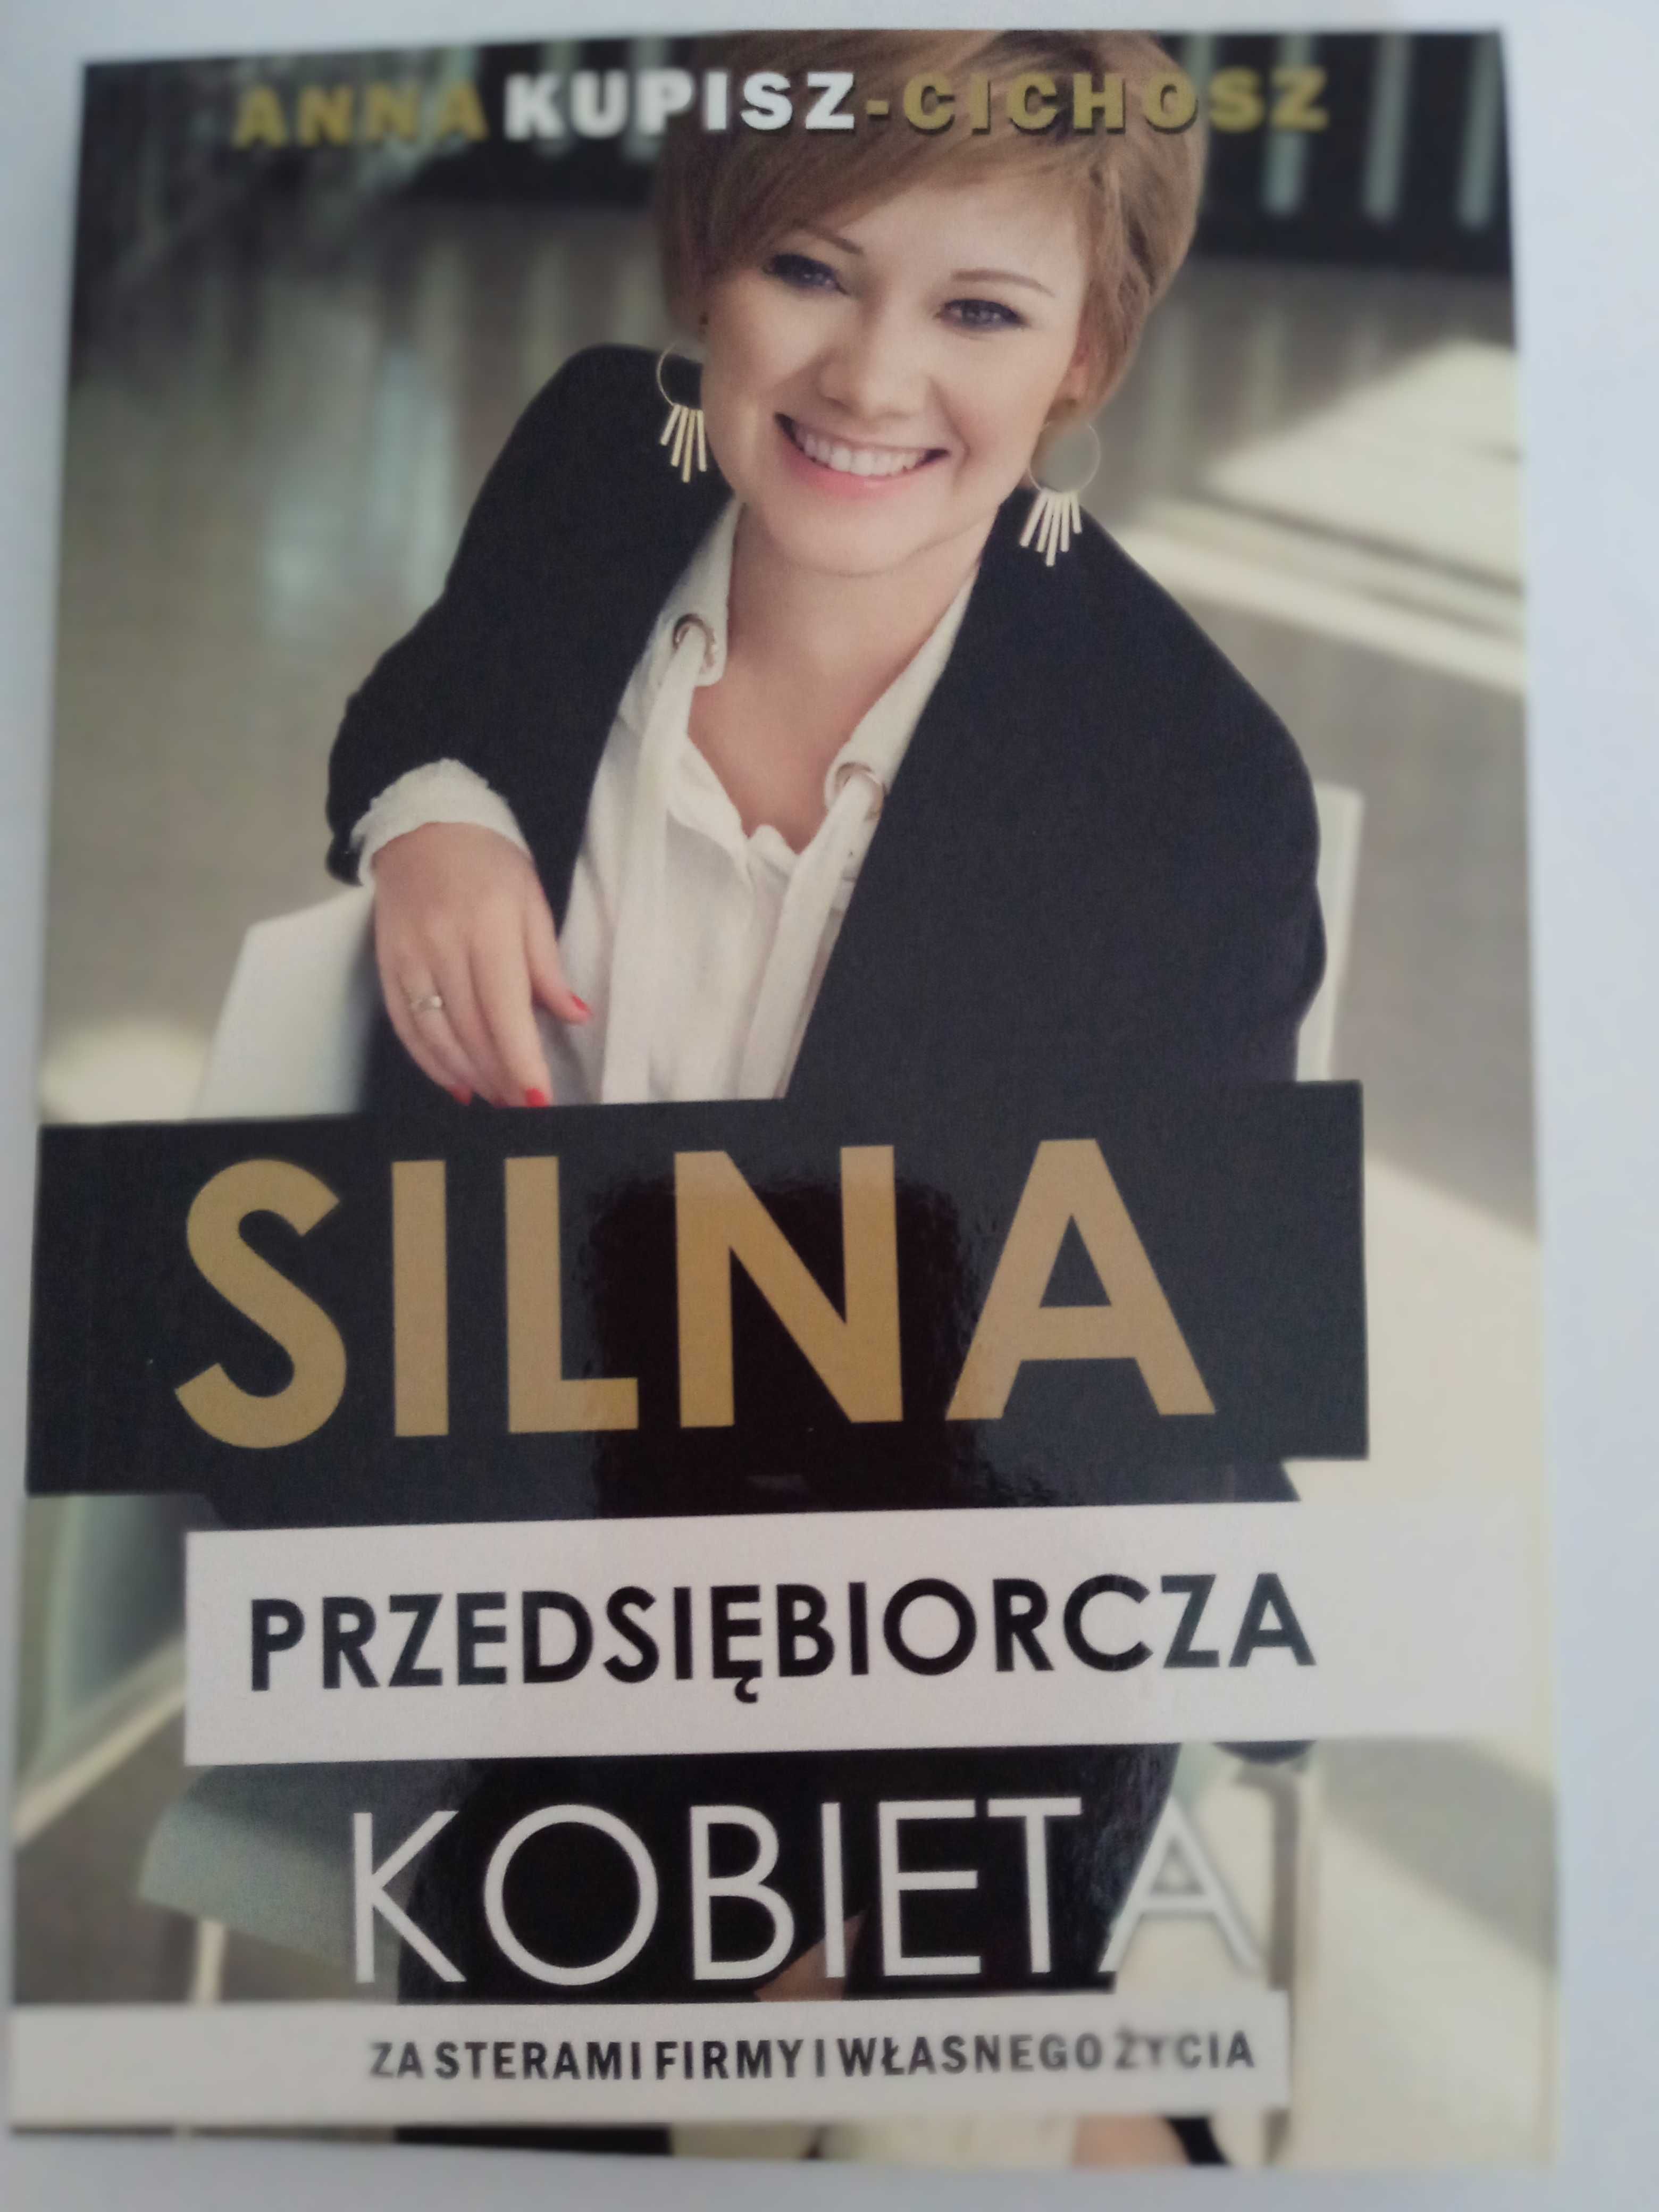 "Silna przedsiębiorcza kobieta" - autorka Anna Kupisz-Cichosz